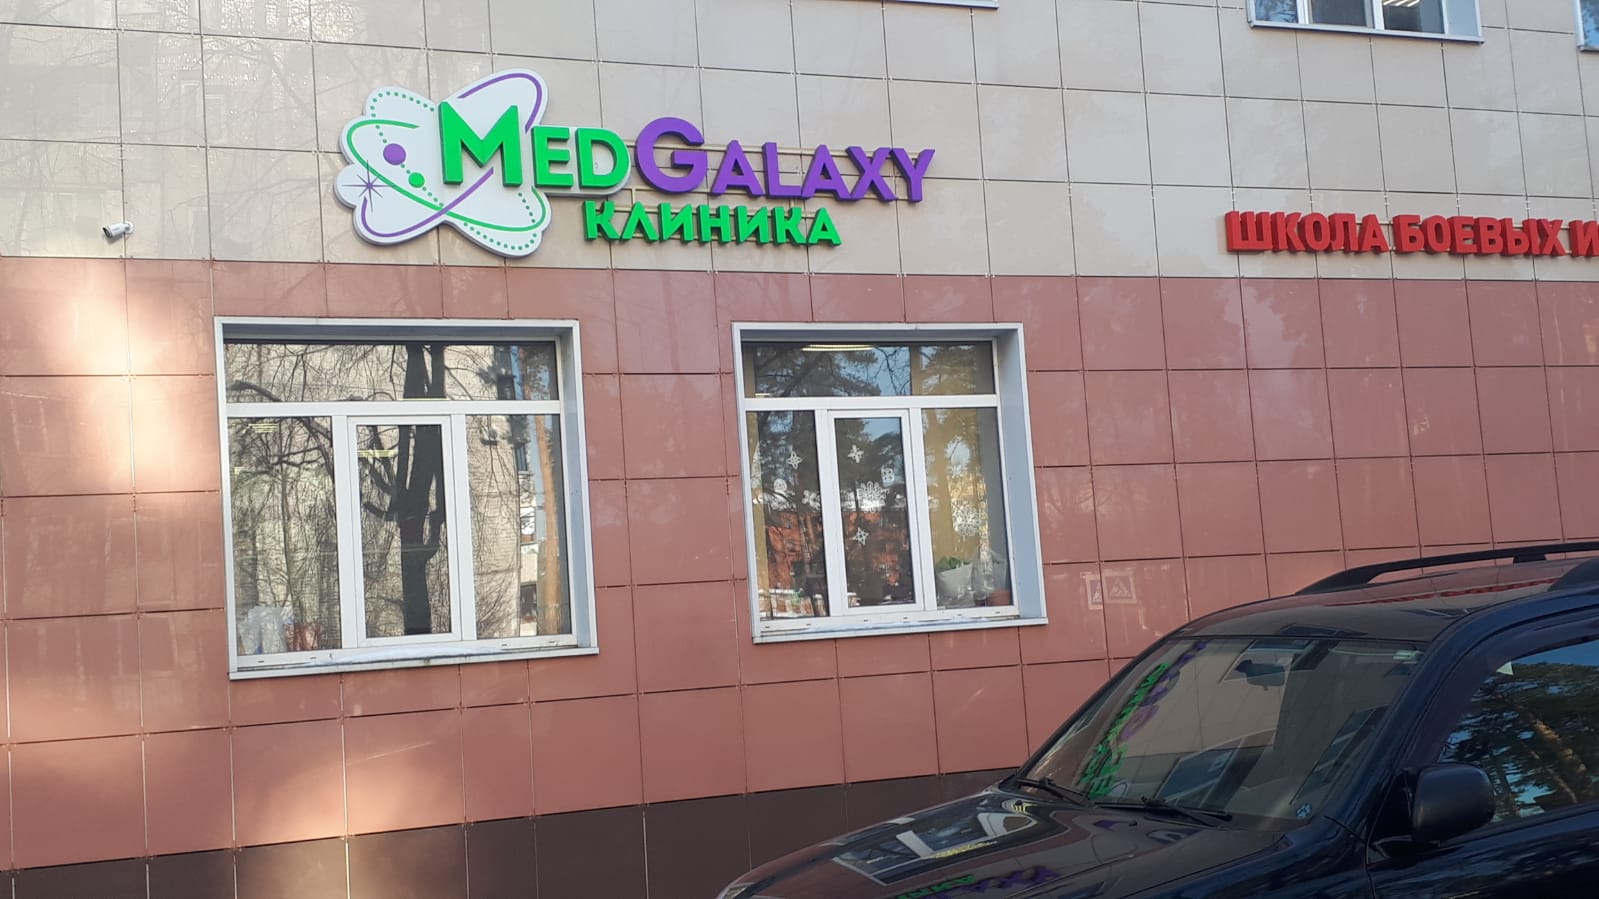 Клиника "MedGalaxy"  в Юбилейном.